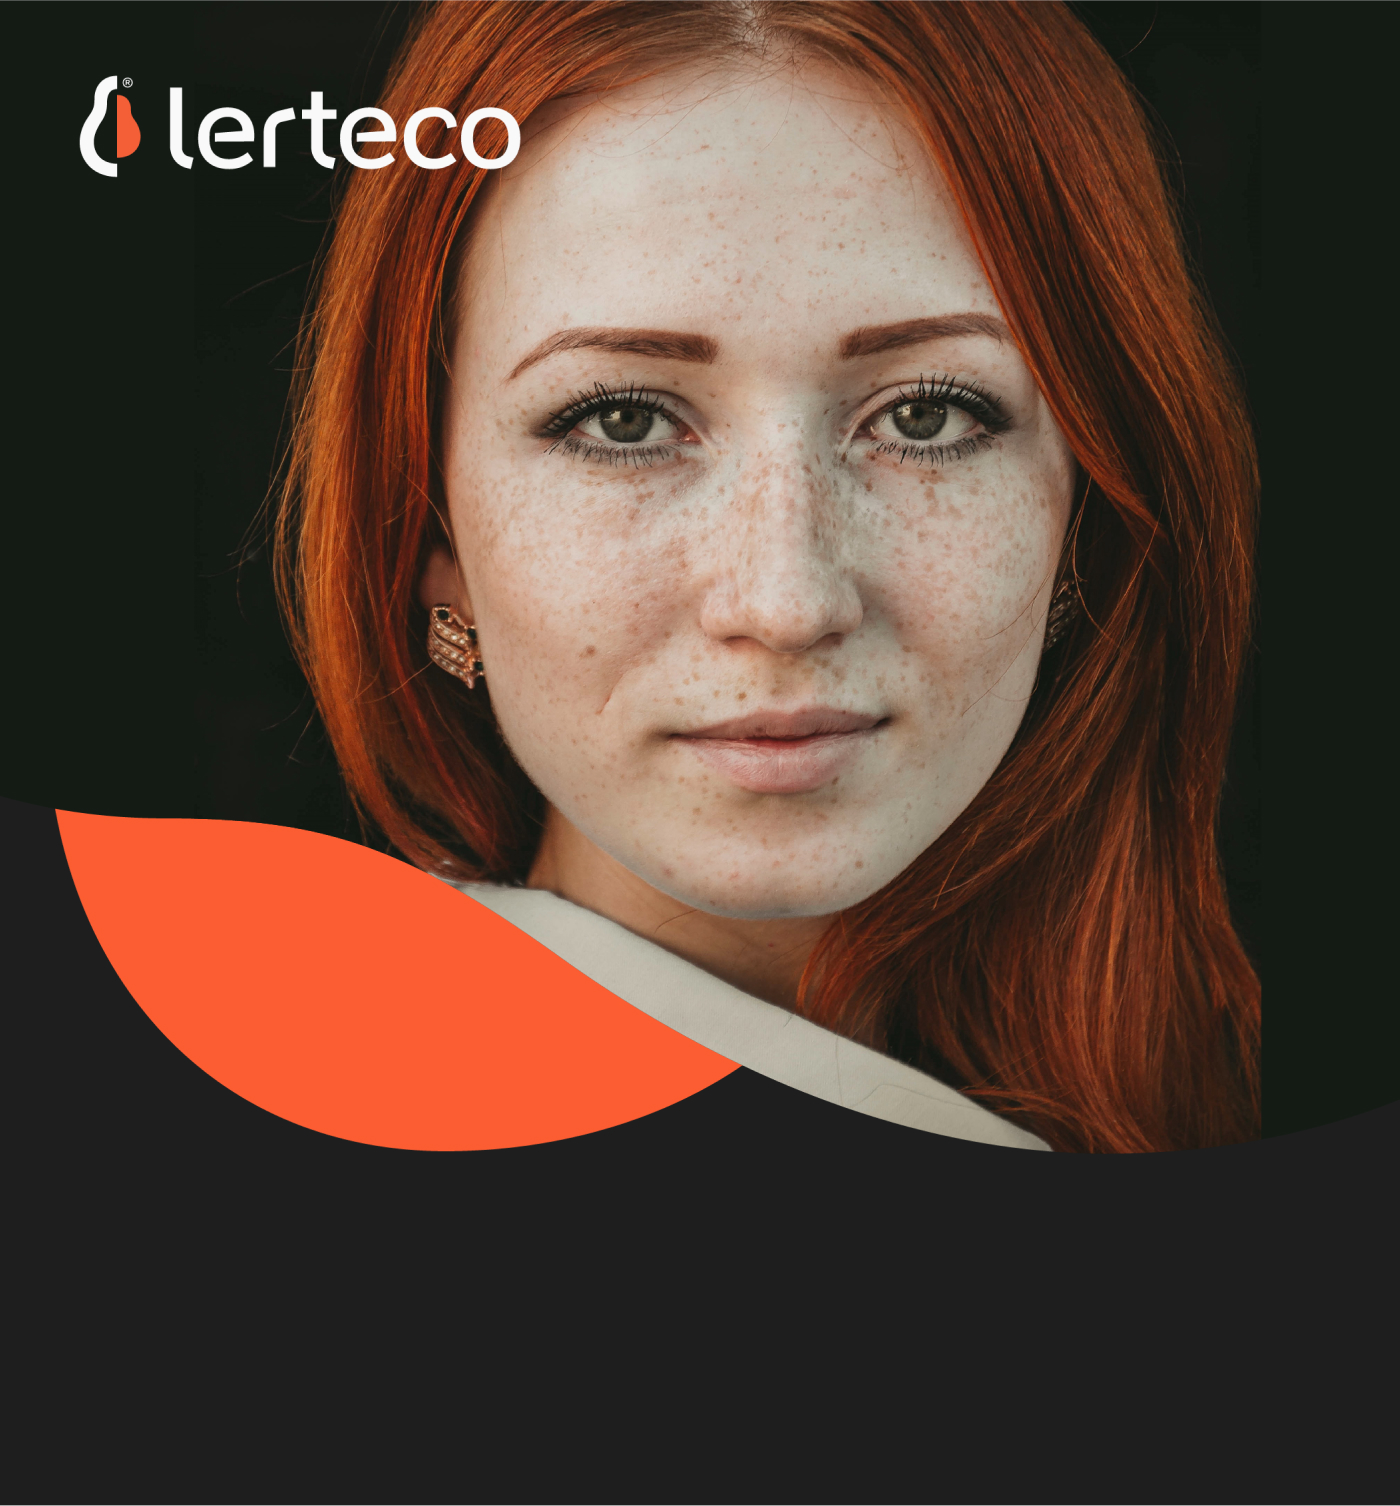 Lerteco girl